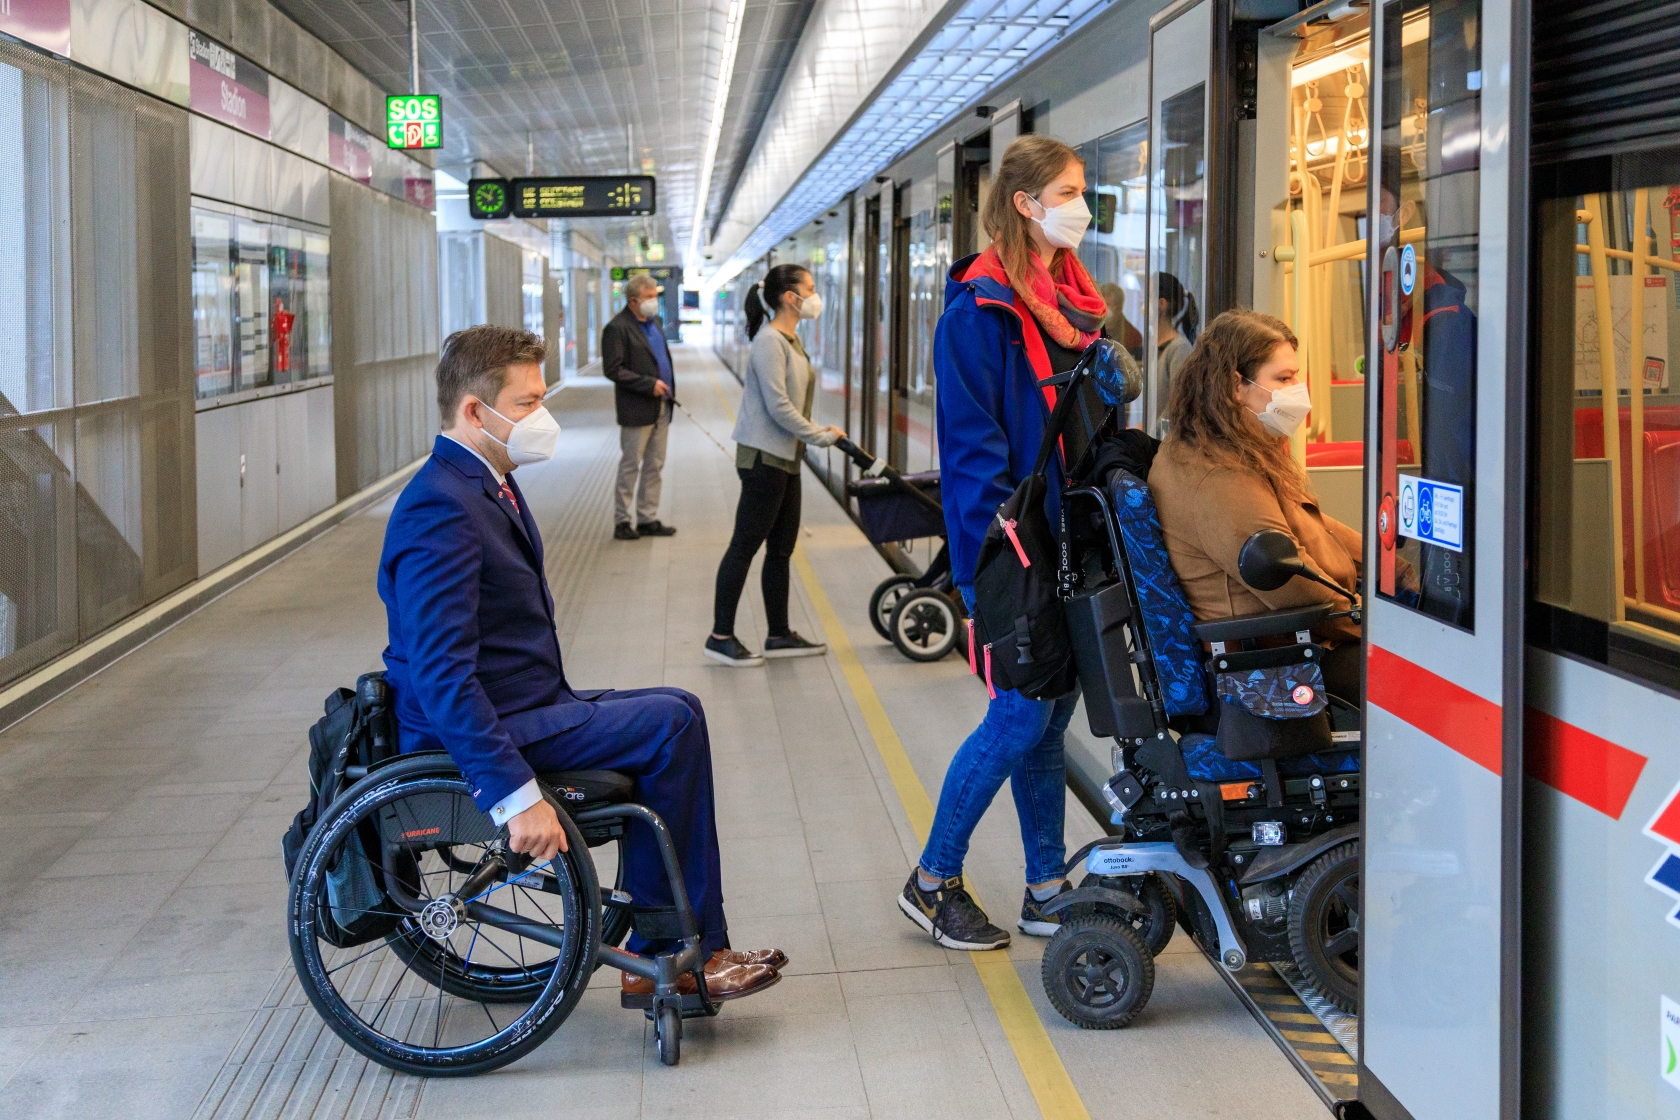 Im Vordergrund steigen drei Fahrgäste in die U-Bahn ein, zwei davon im Rollstuhl sitzend. Im Hintergrund ist eine Dame mit Kinderwagen und ein blinder Fahrgast mit Langstock beim Einstieg zu sehen.